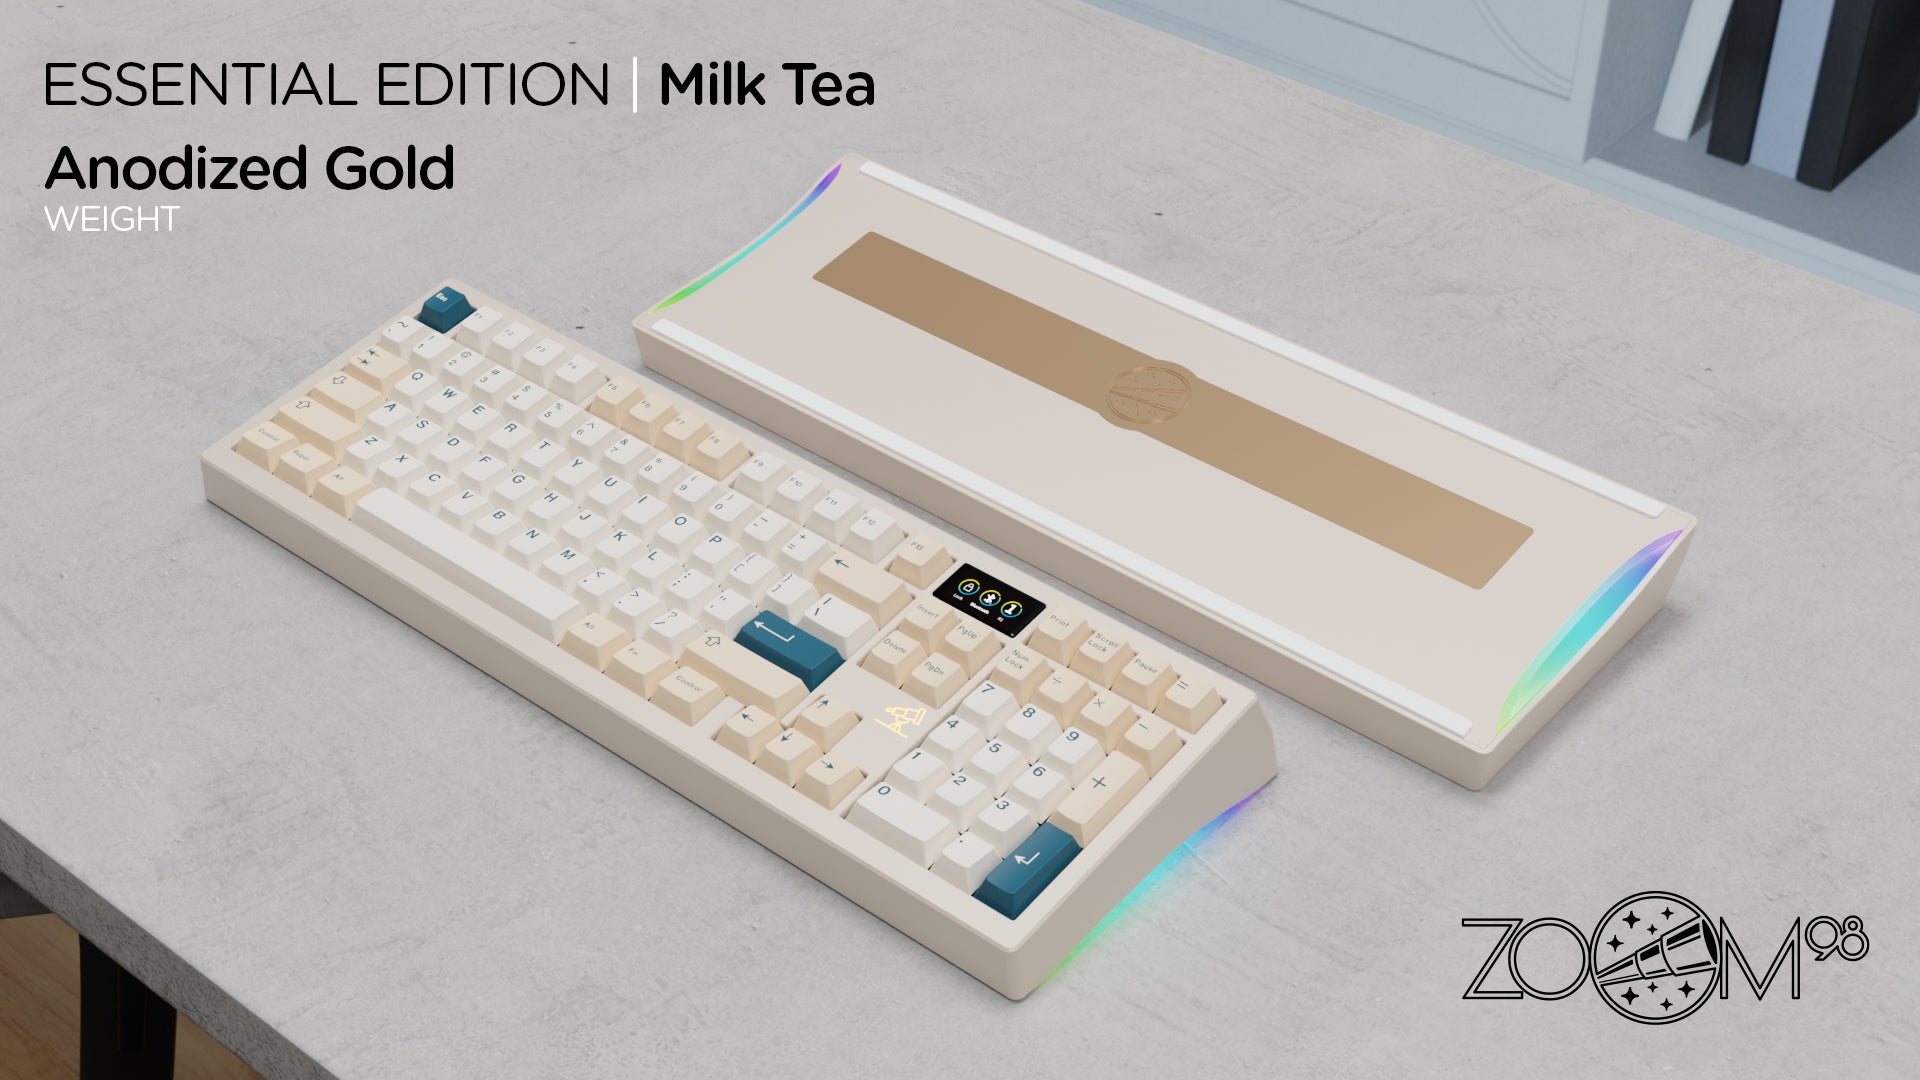 Zoom98 EE Milk Tea